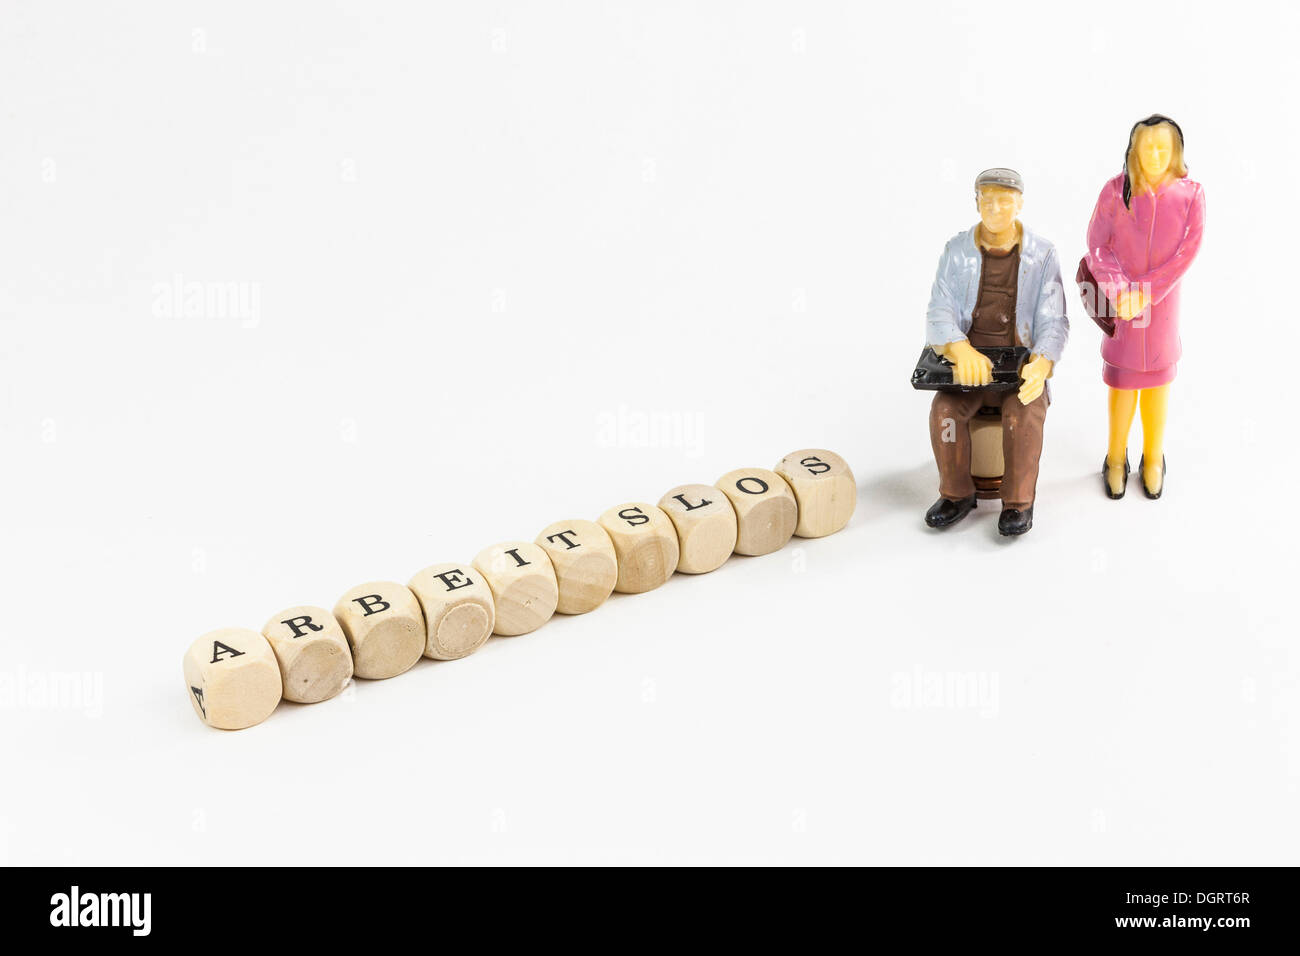 Le figure in miniatura di un disoccupato giovane, lettera cubi formanti la parola 'arbeitslos', tedesco per "disoccupati" Foto Stock